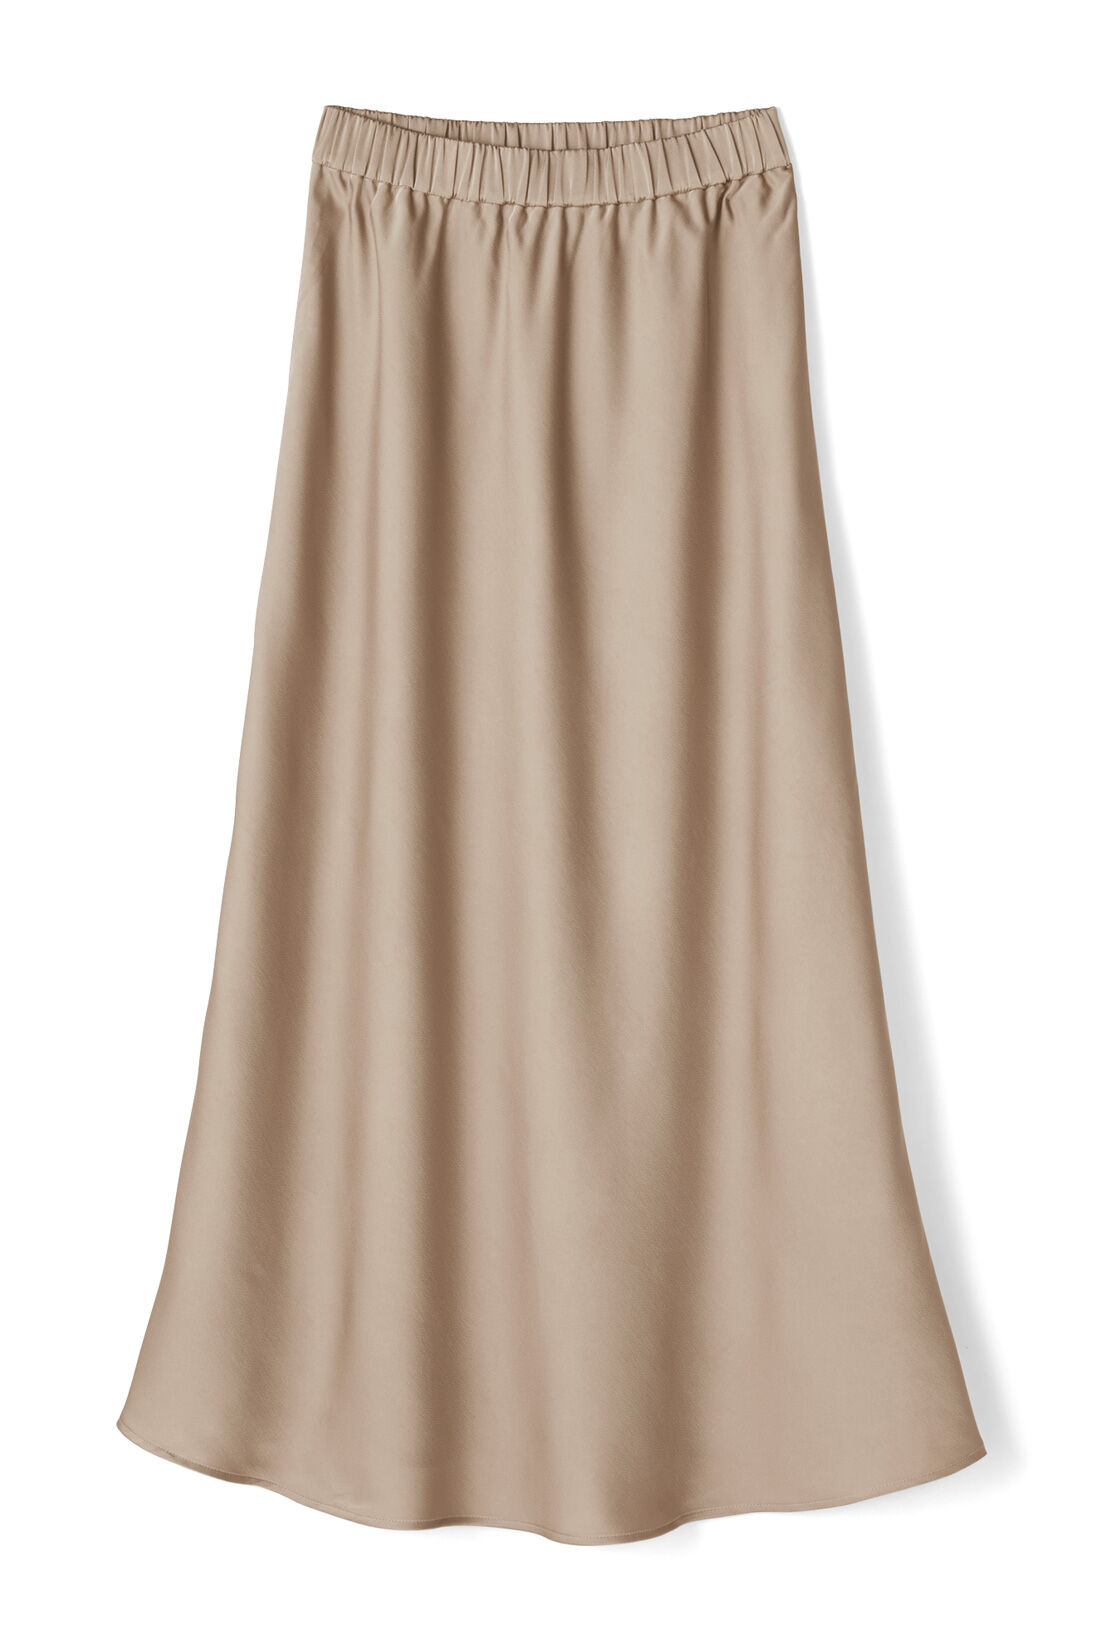 IEDIT[イディット]　サテンの光沢が美しいセミサーキュラースカート〈ベージュ〉|〈ベージュ〉